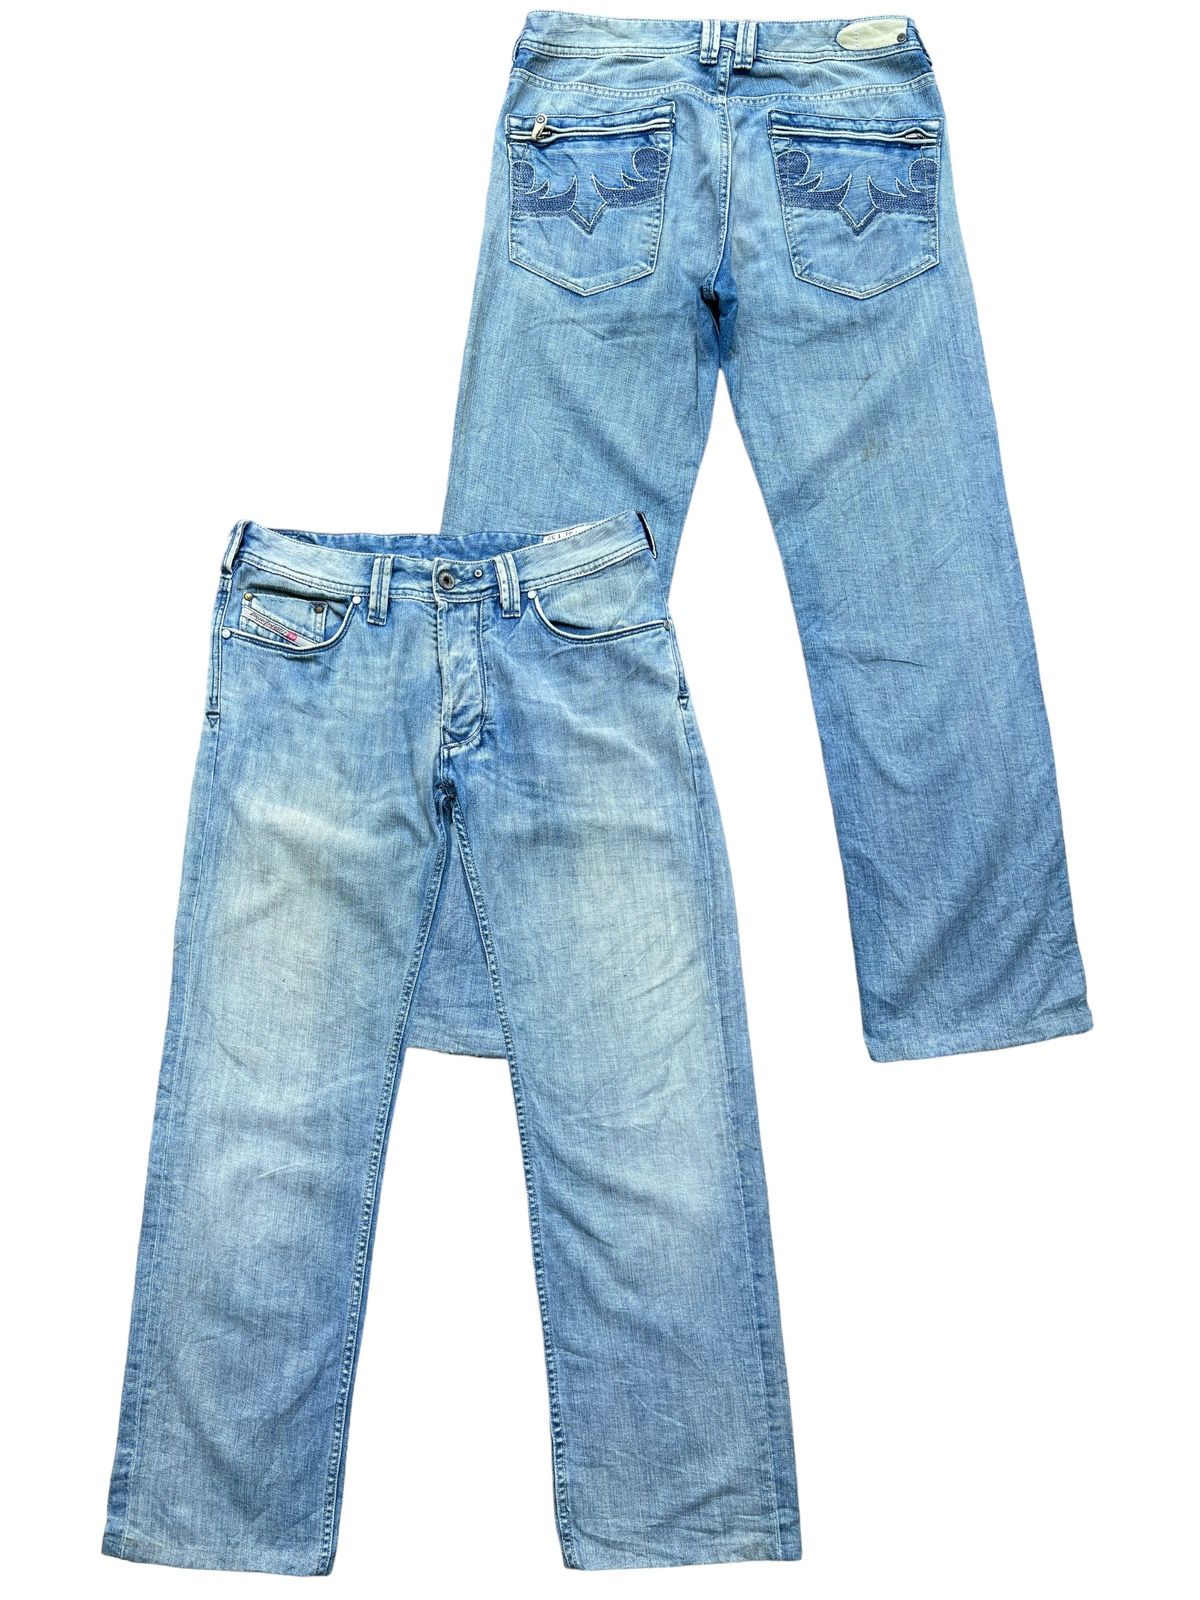 Vintage Distressed Diesel Industry Wide Jeans 32x30 - 1